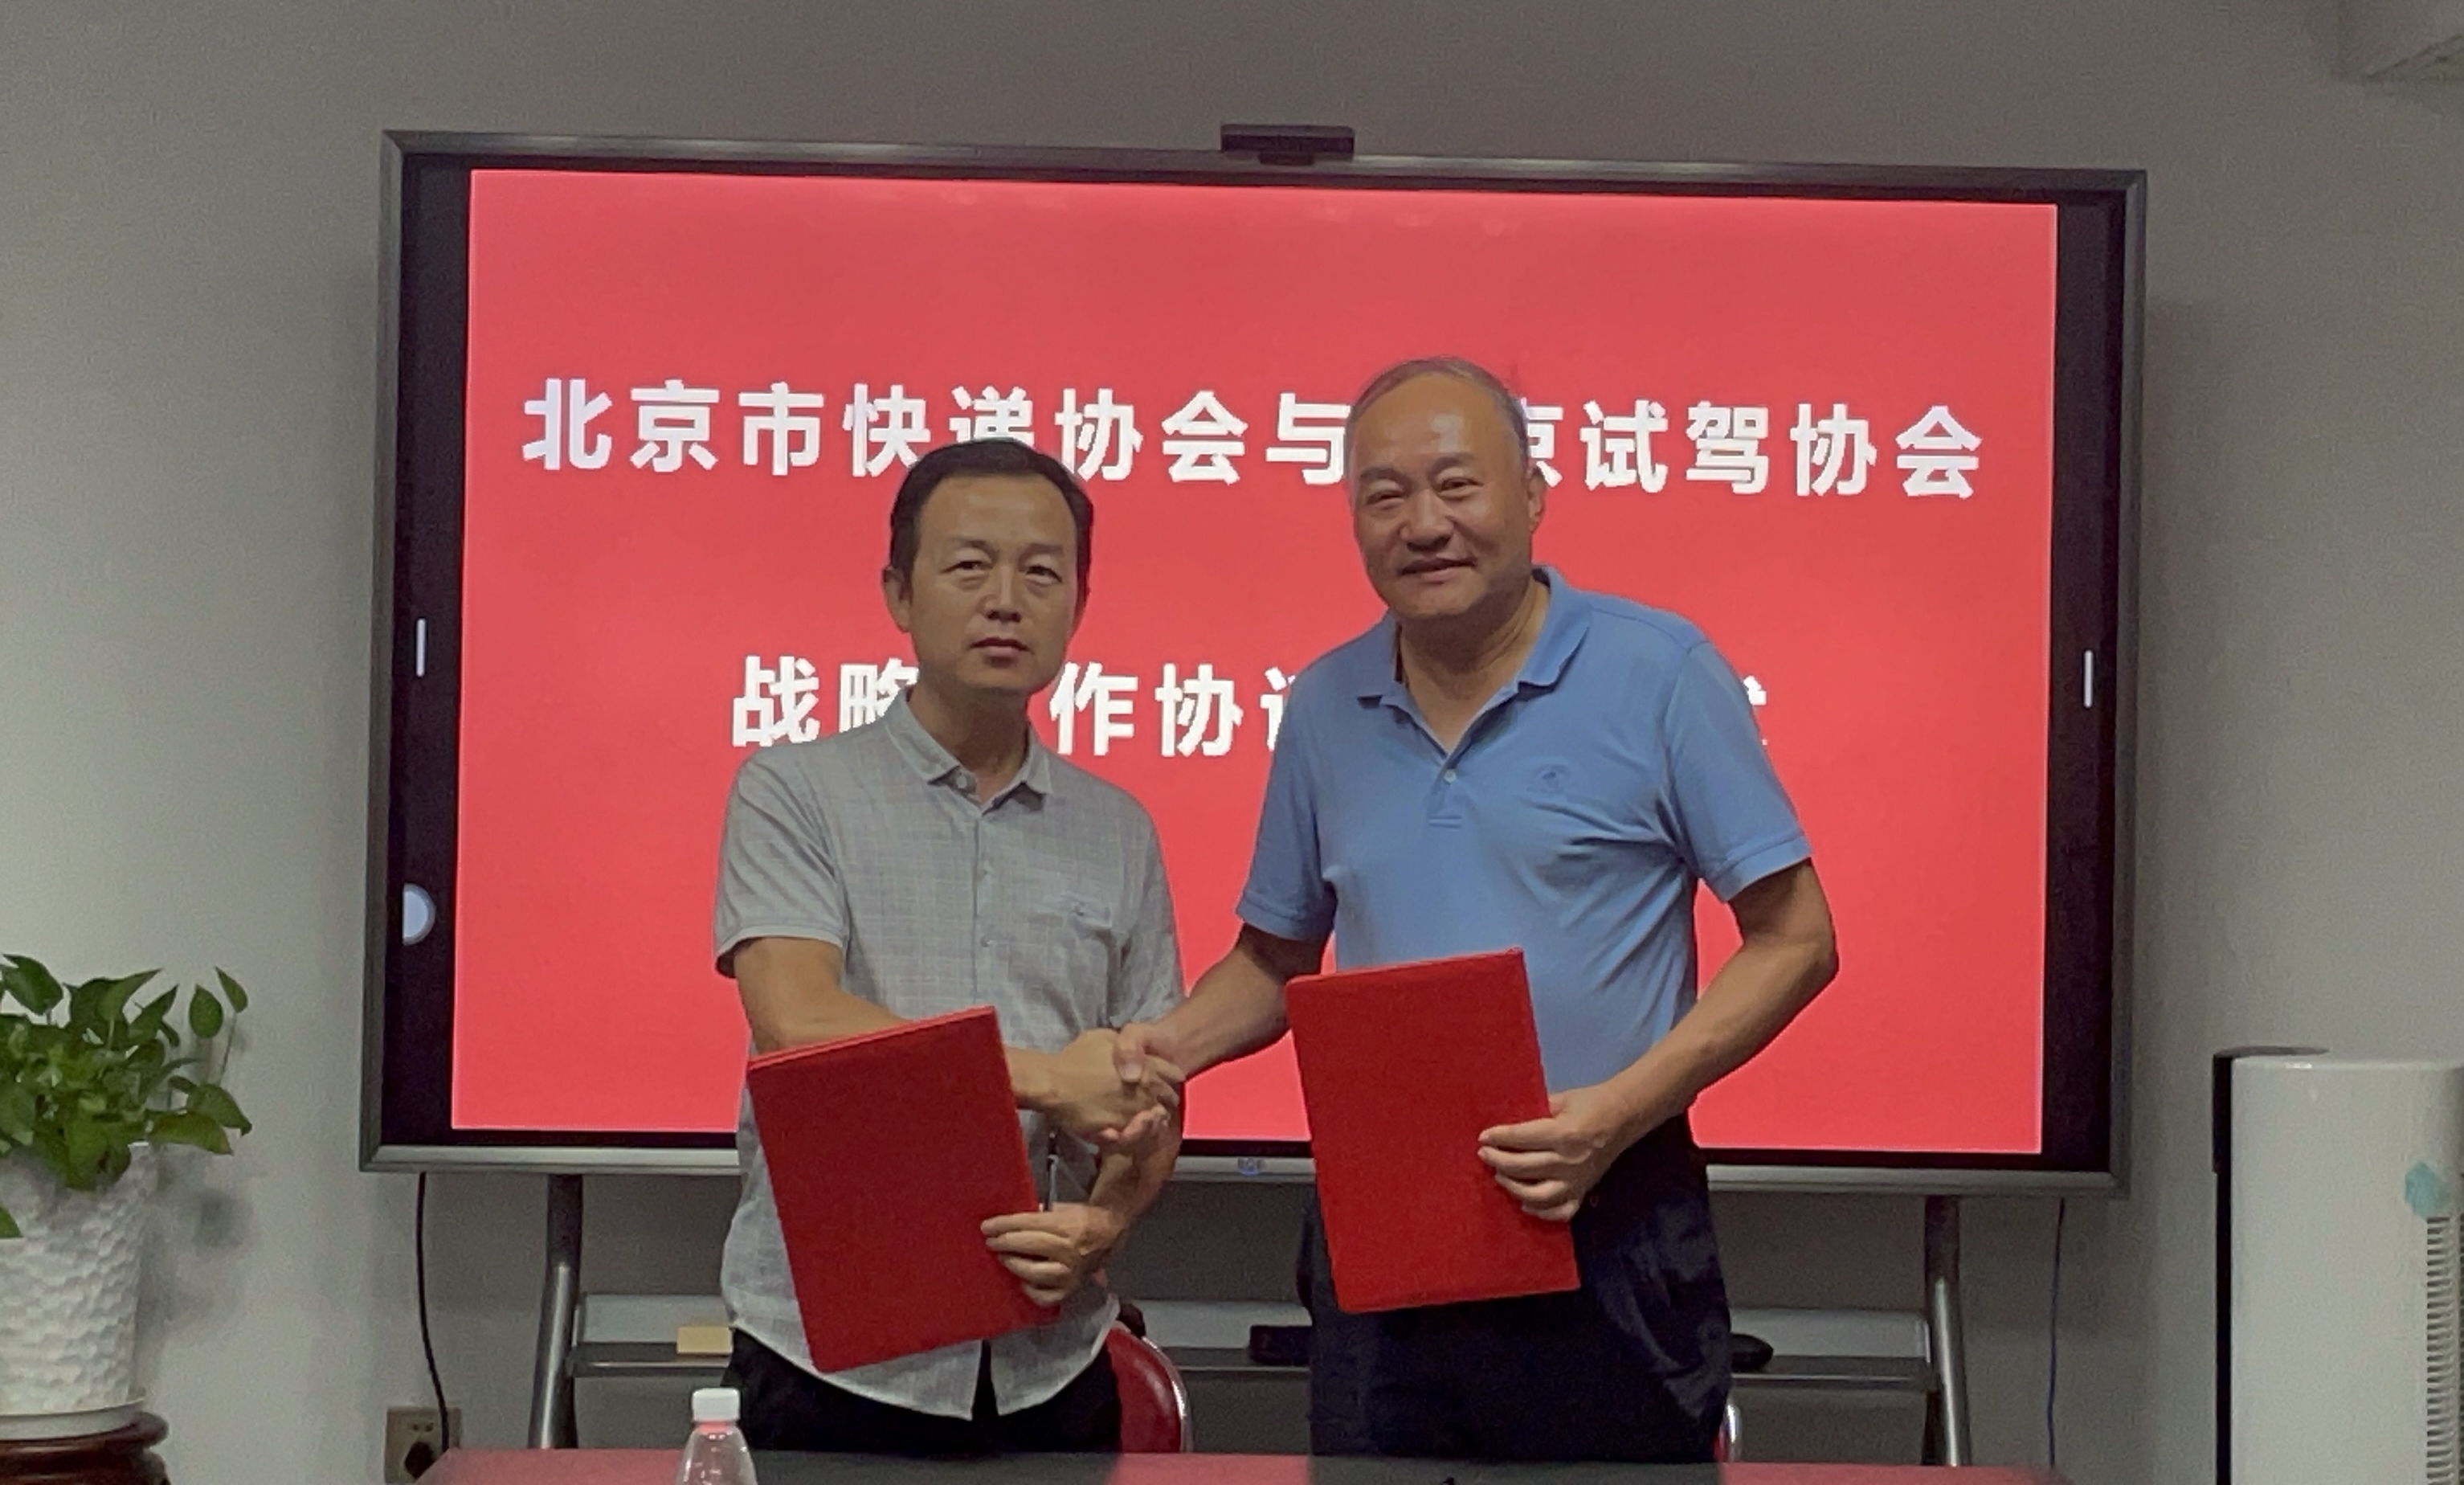 八方体育娱乐 v2.71与北京汽车试驾协会签署战略合作协议